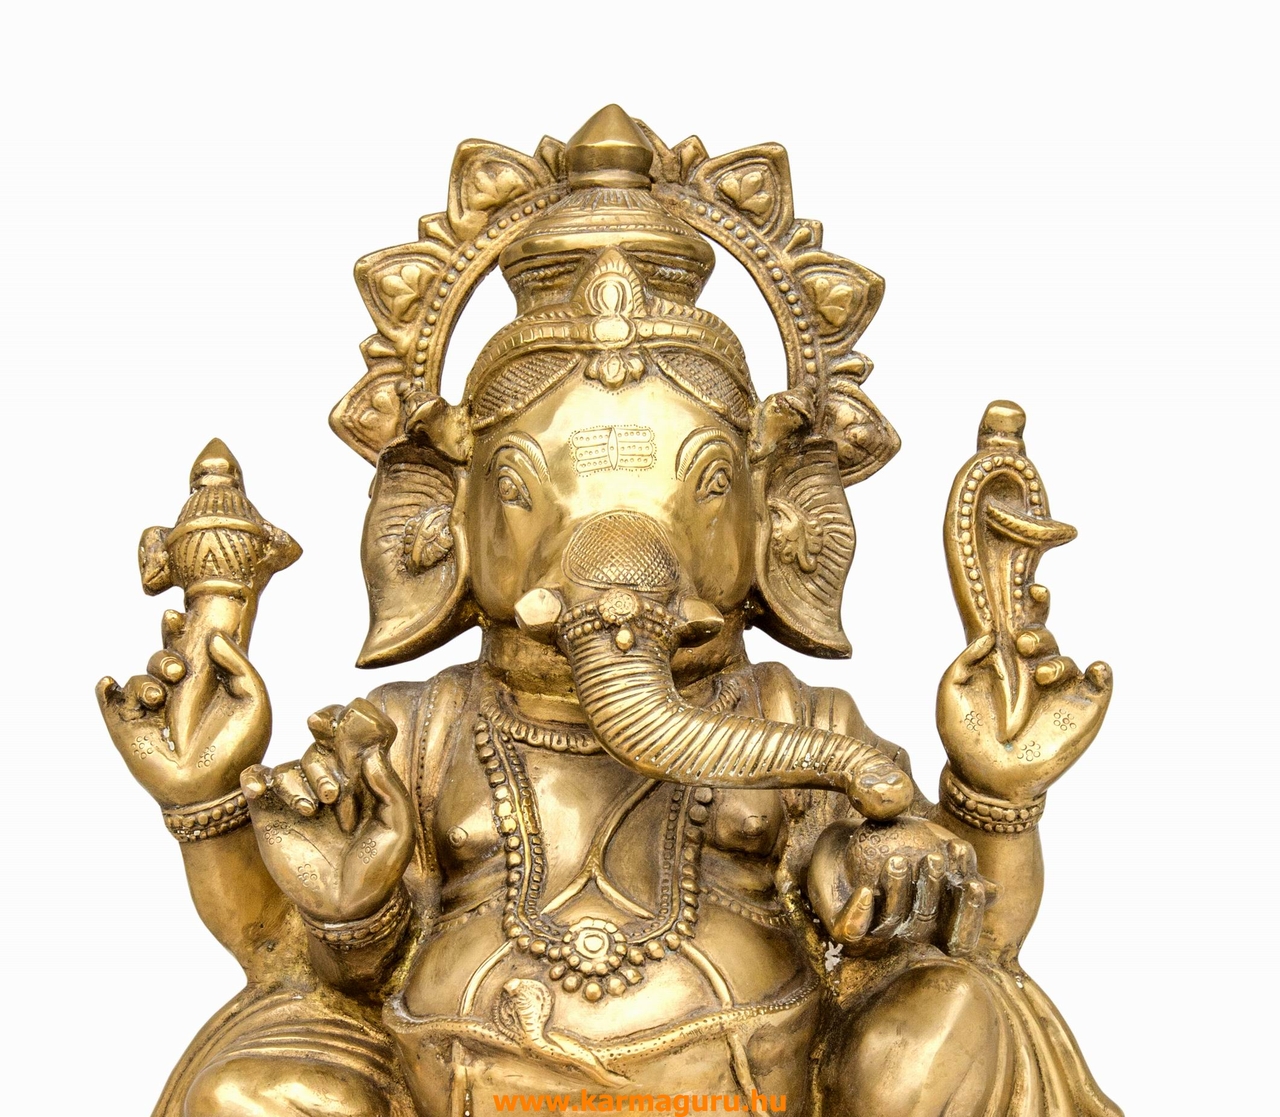 Ganesha hatalmas réz szobor különlegesség - 65 cm